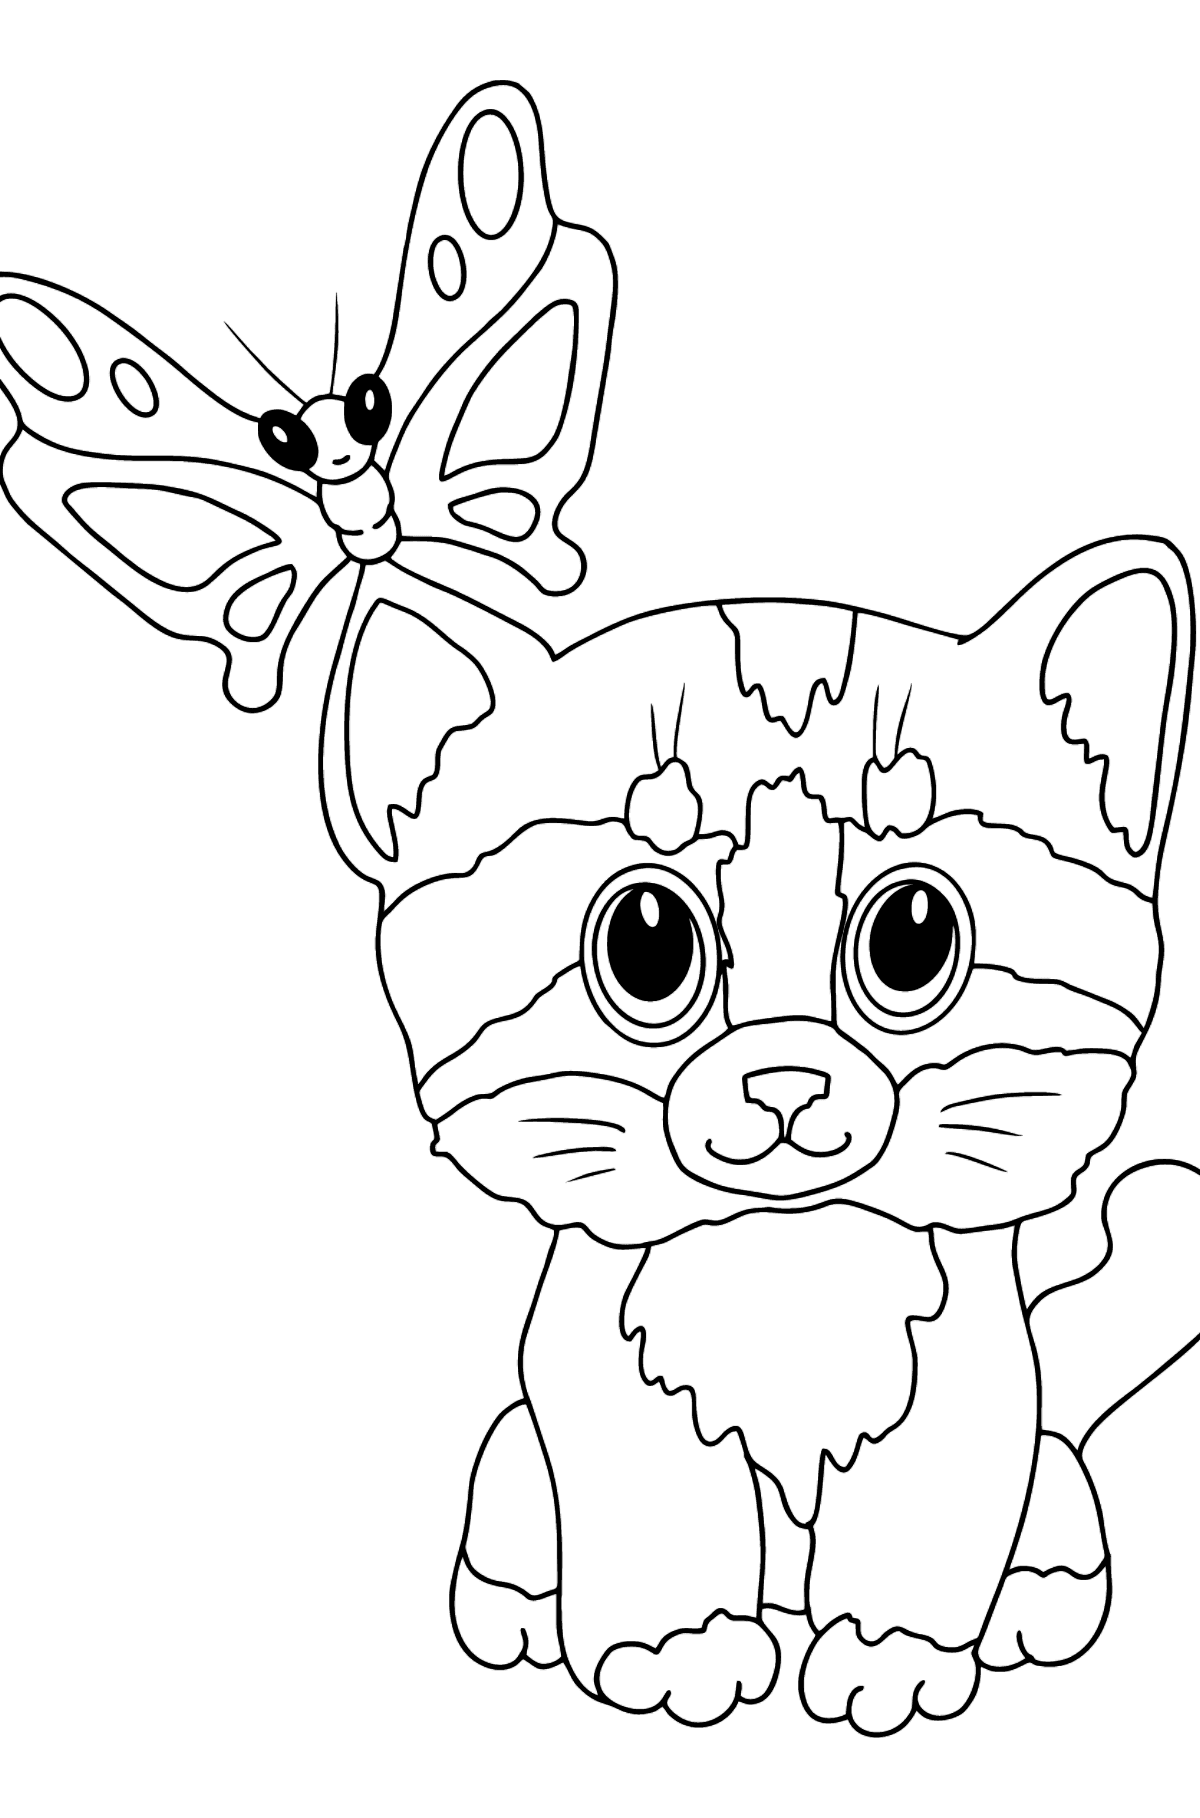 Disegno da colorare di gattino e farfalla - Disegni da colorare per bambini